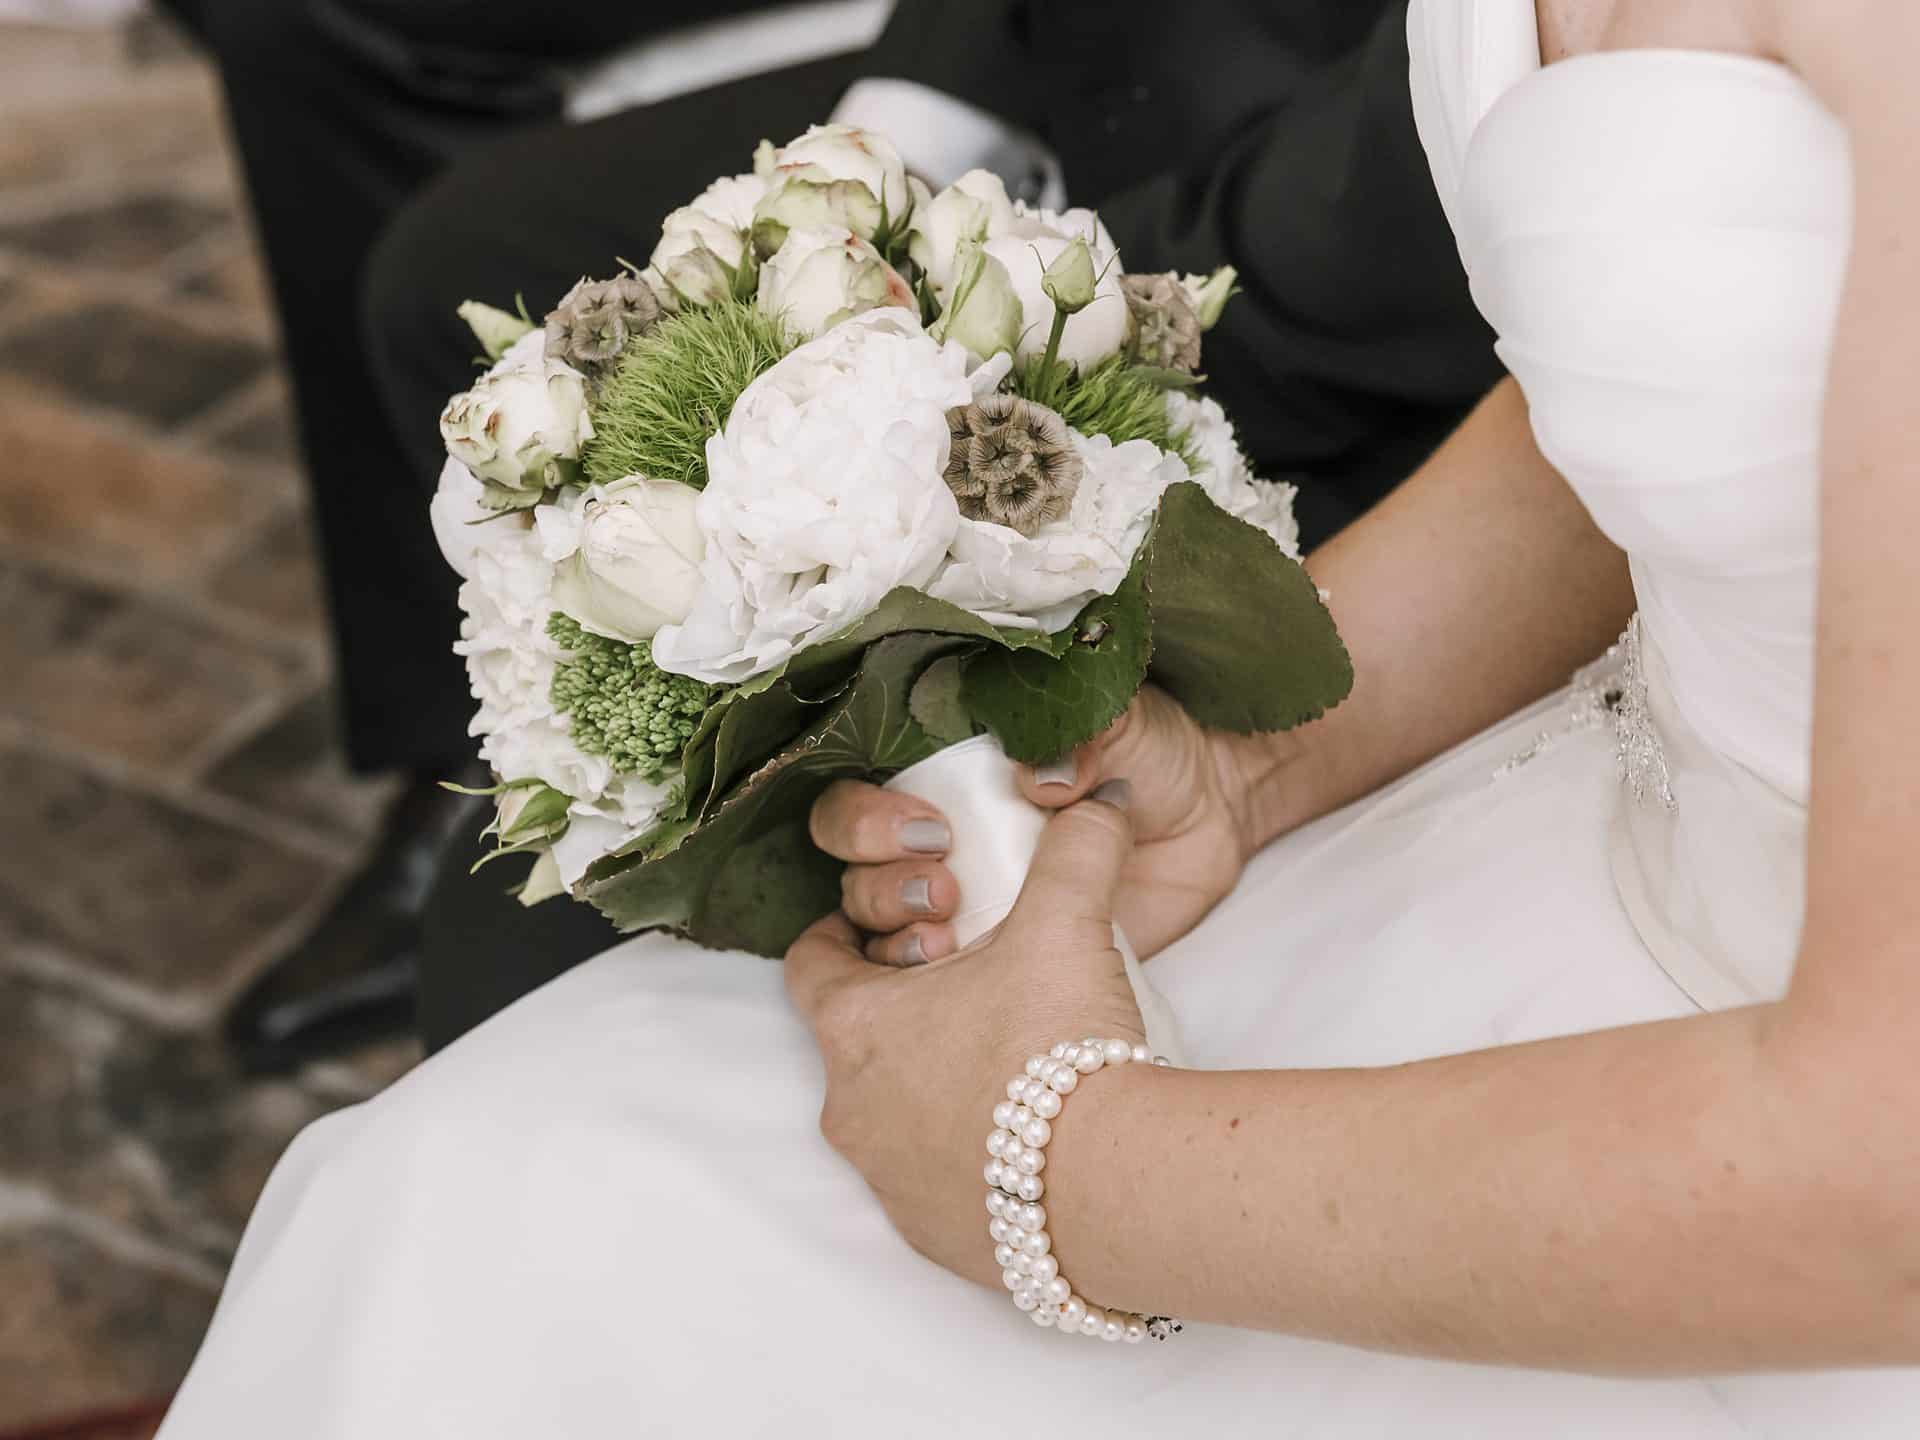 Eine Braut hält einen Strauß weißer und grüner Blumen.